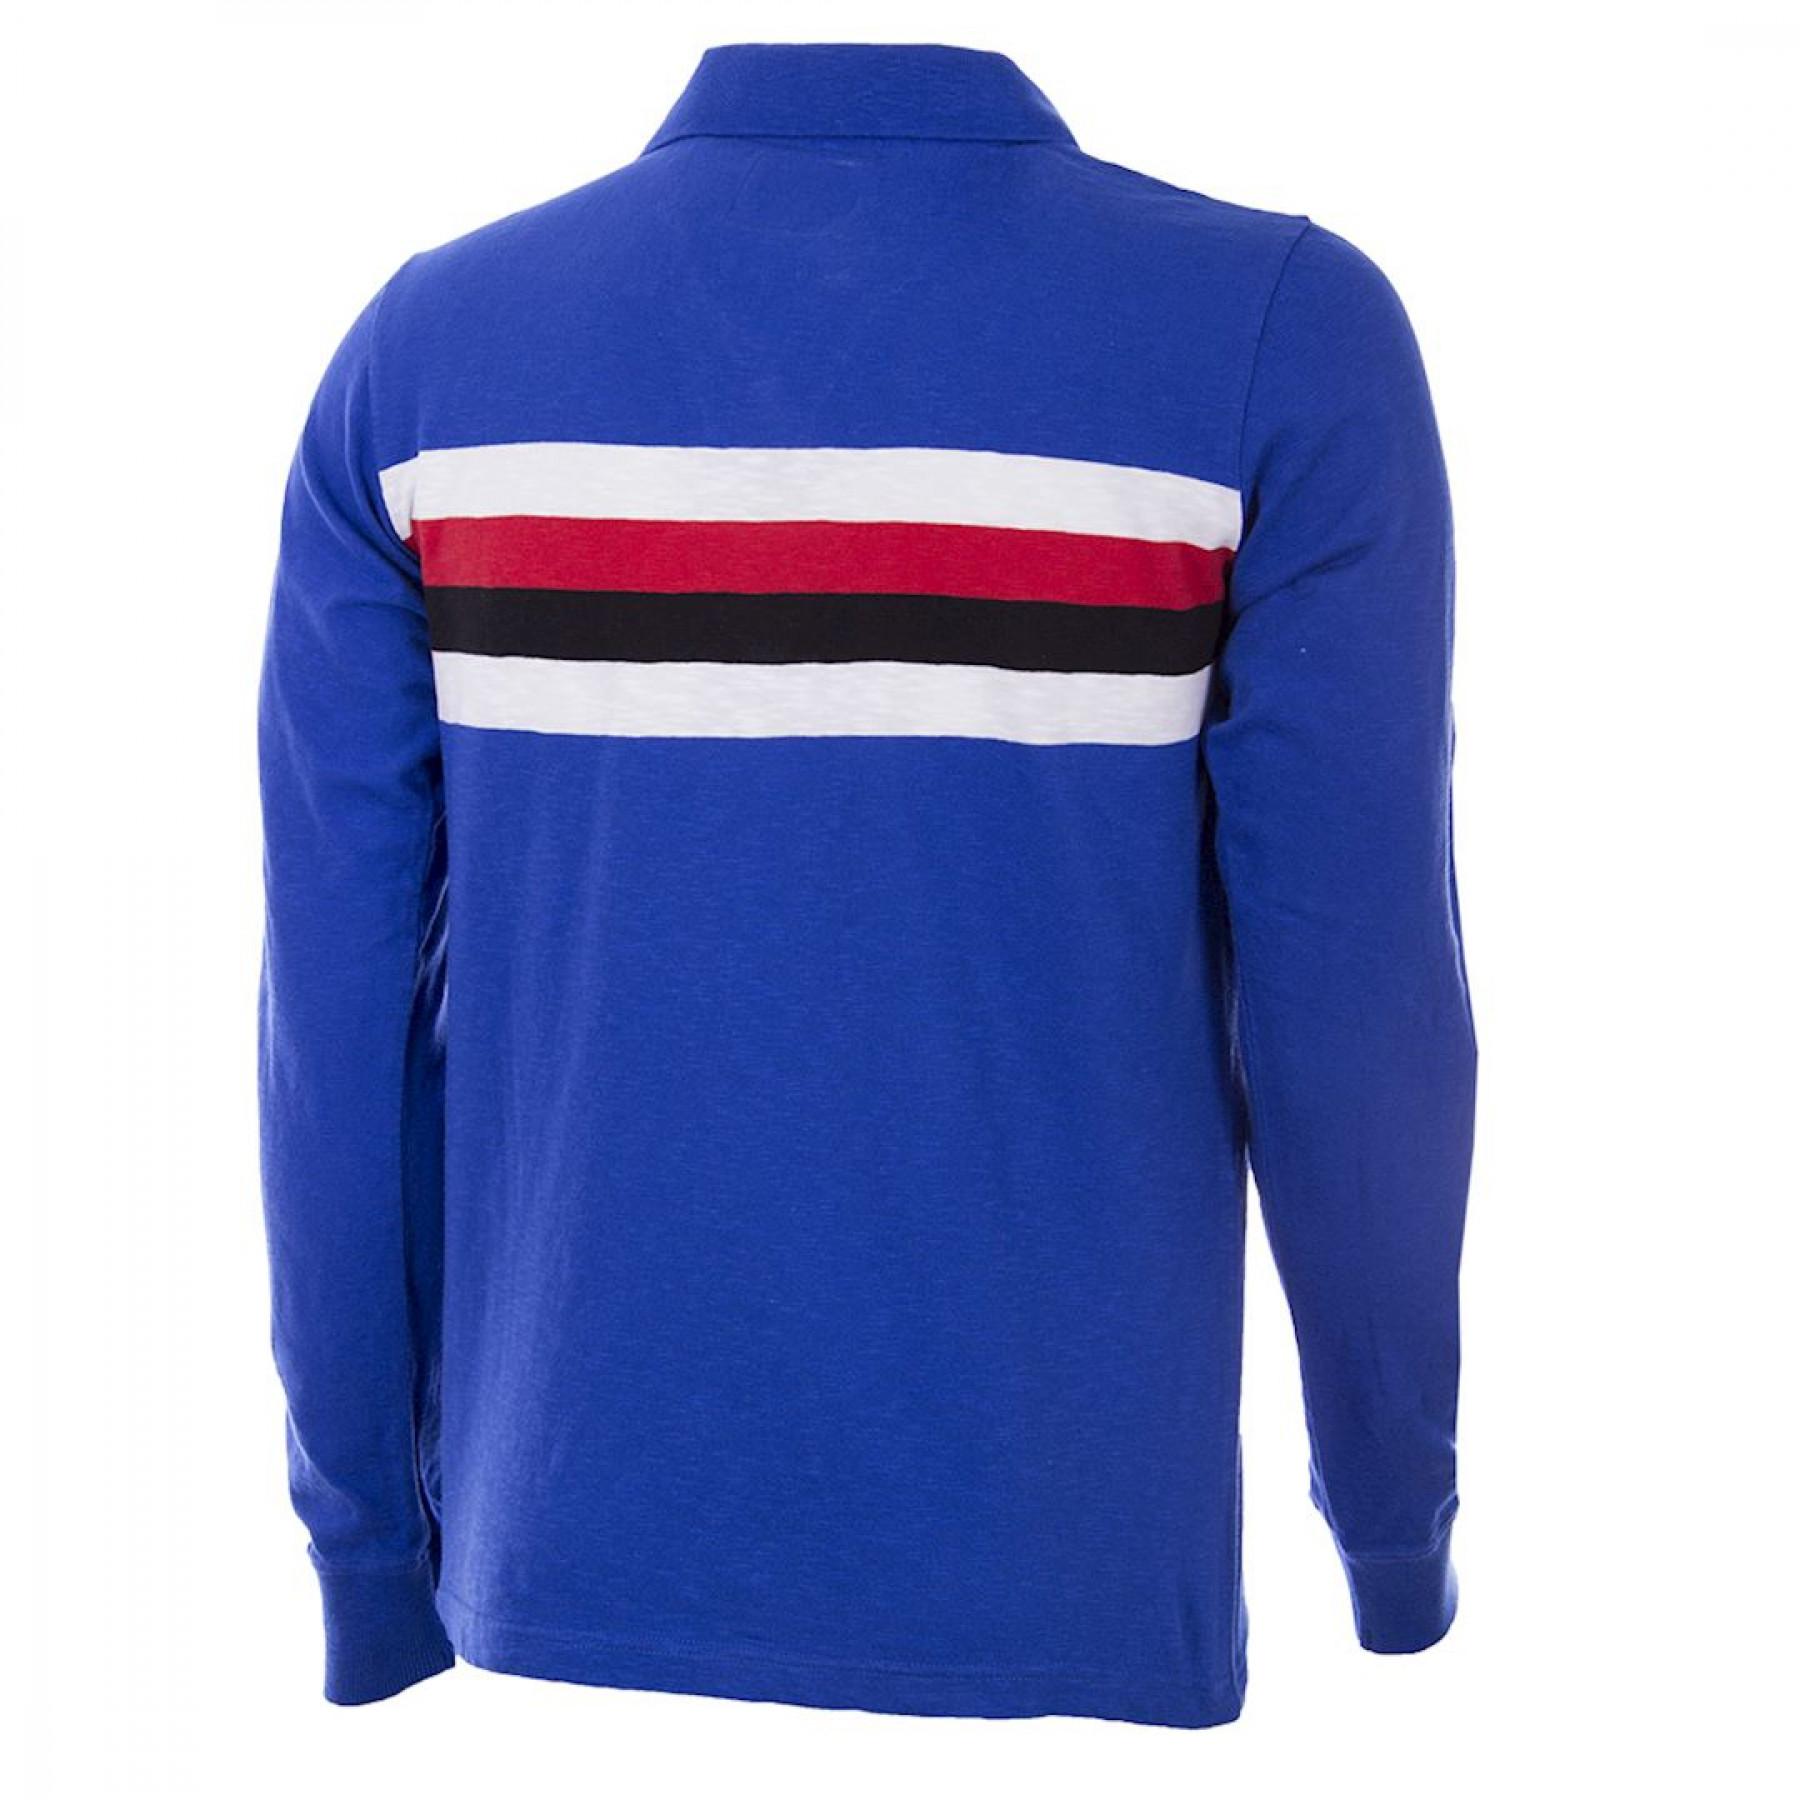 Camiseta primera equipación manga larga Copa U.C Sampdoria 1956/57